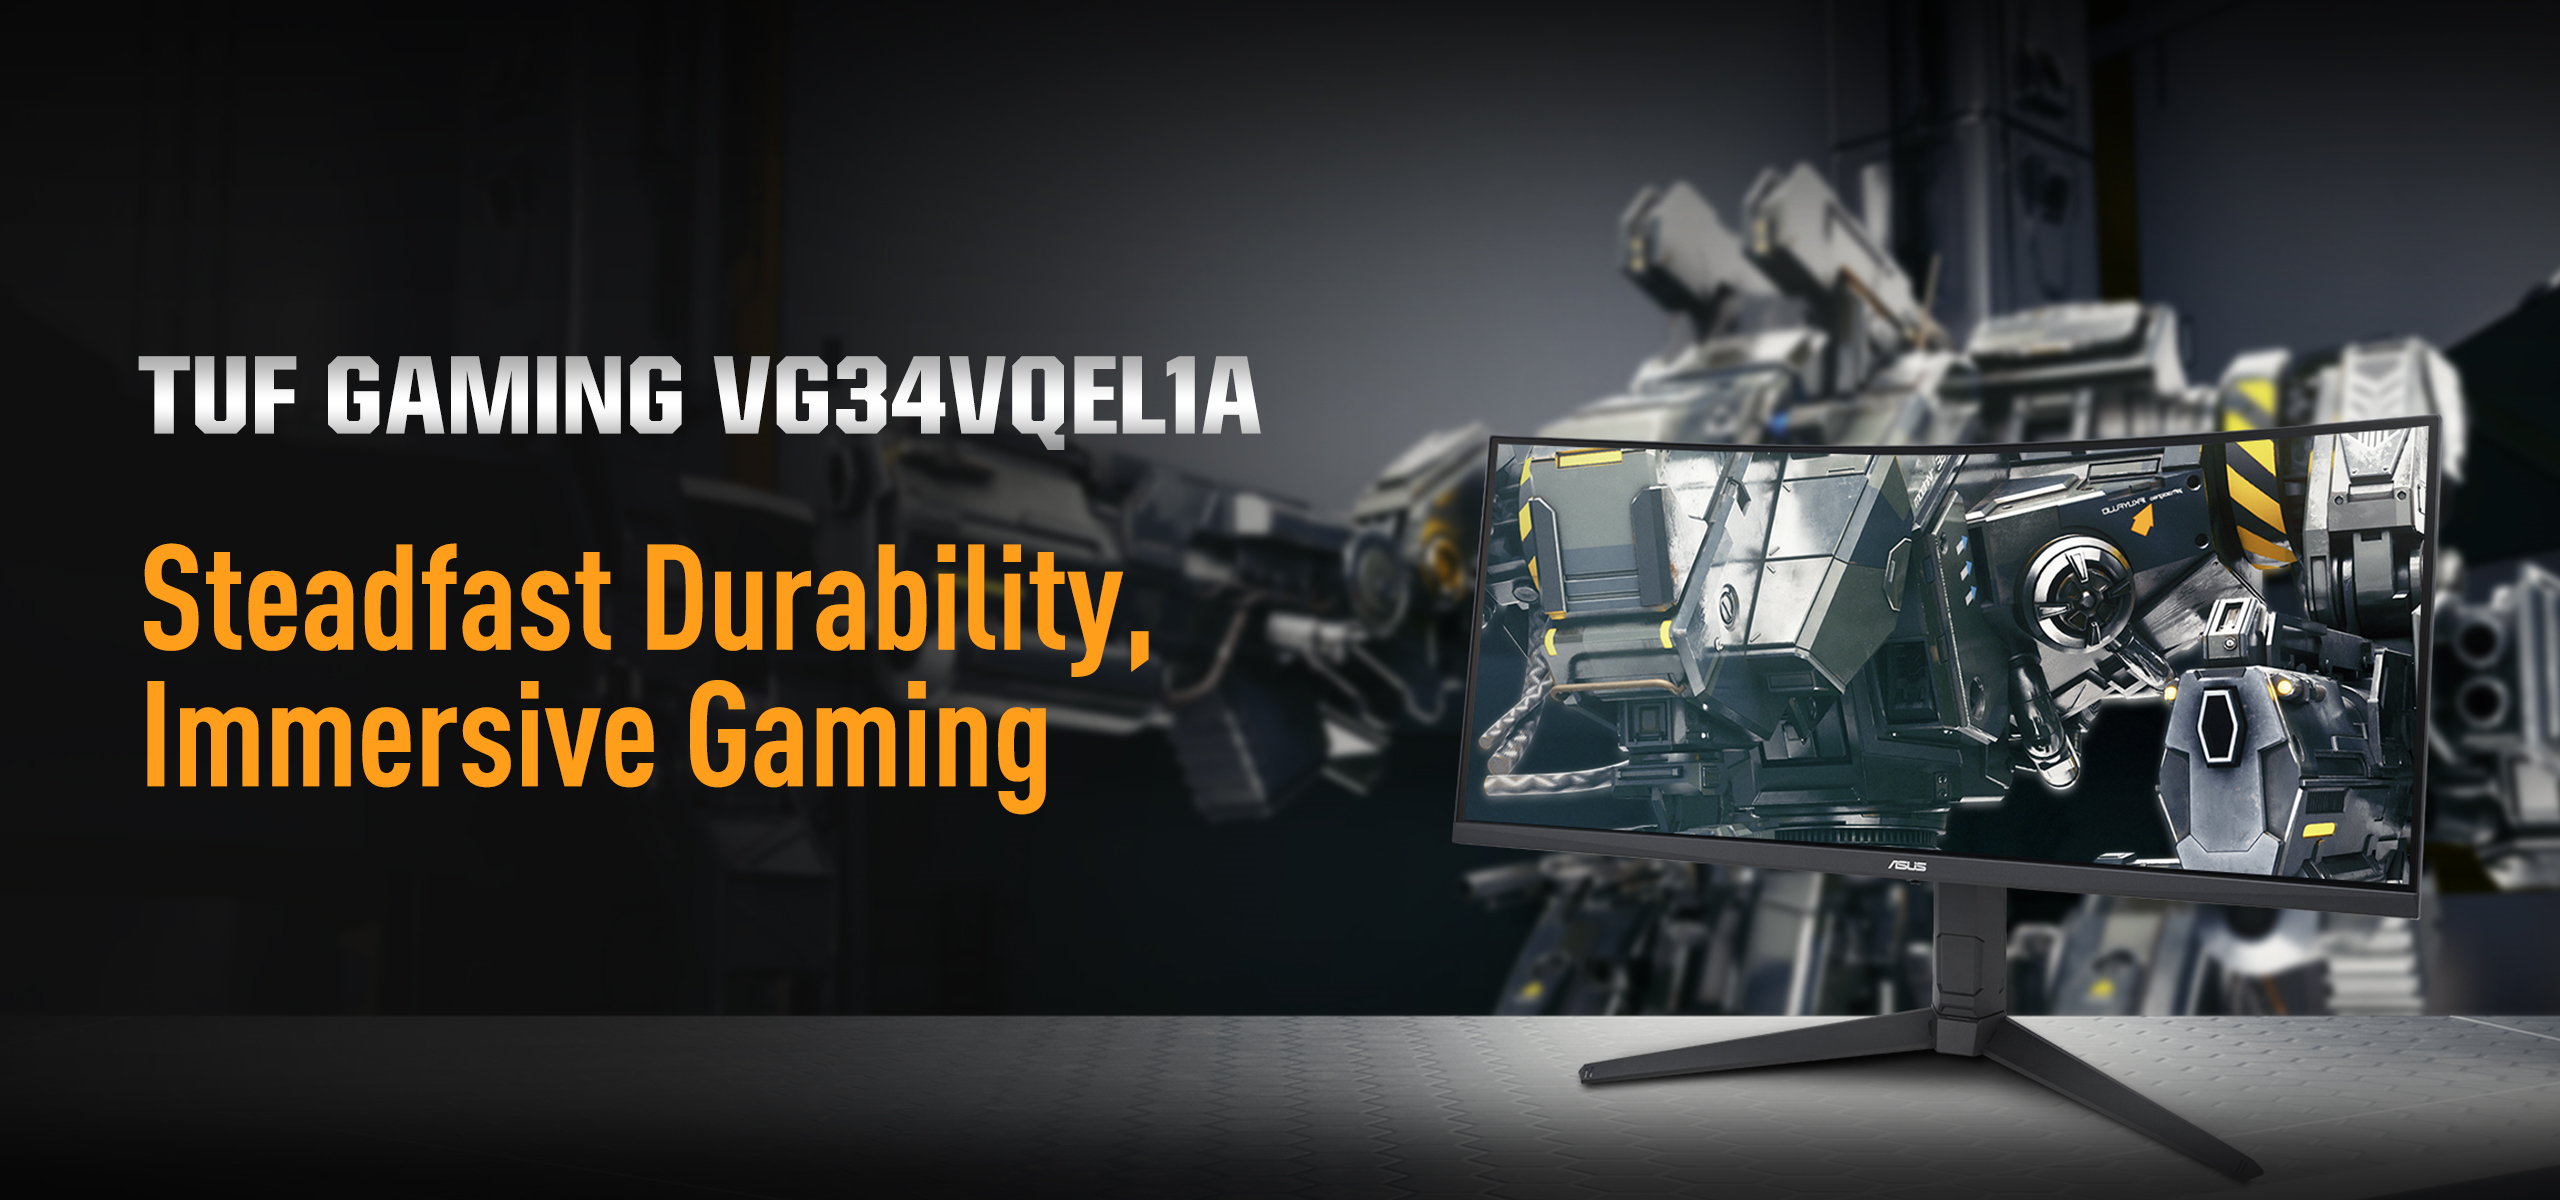 תכונות מכירה מרכזיות של VG34VQEL1A